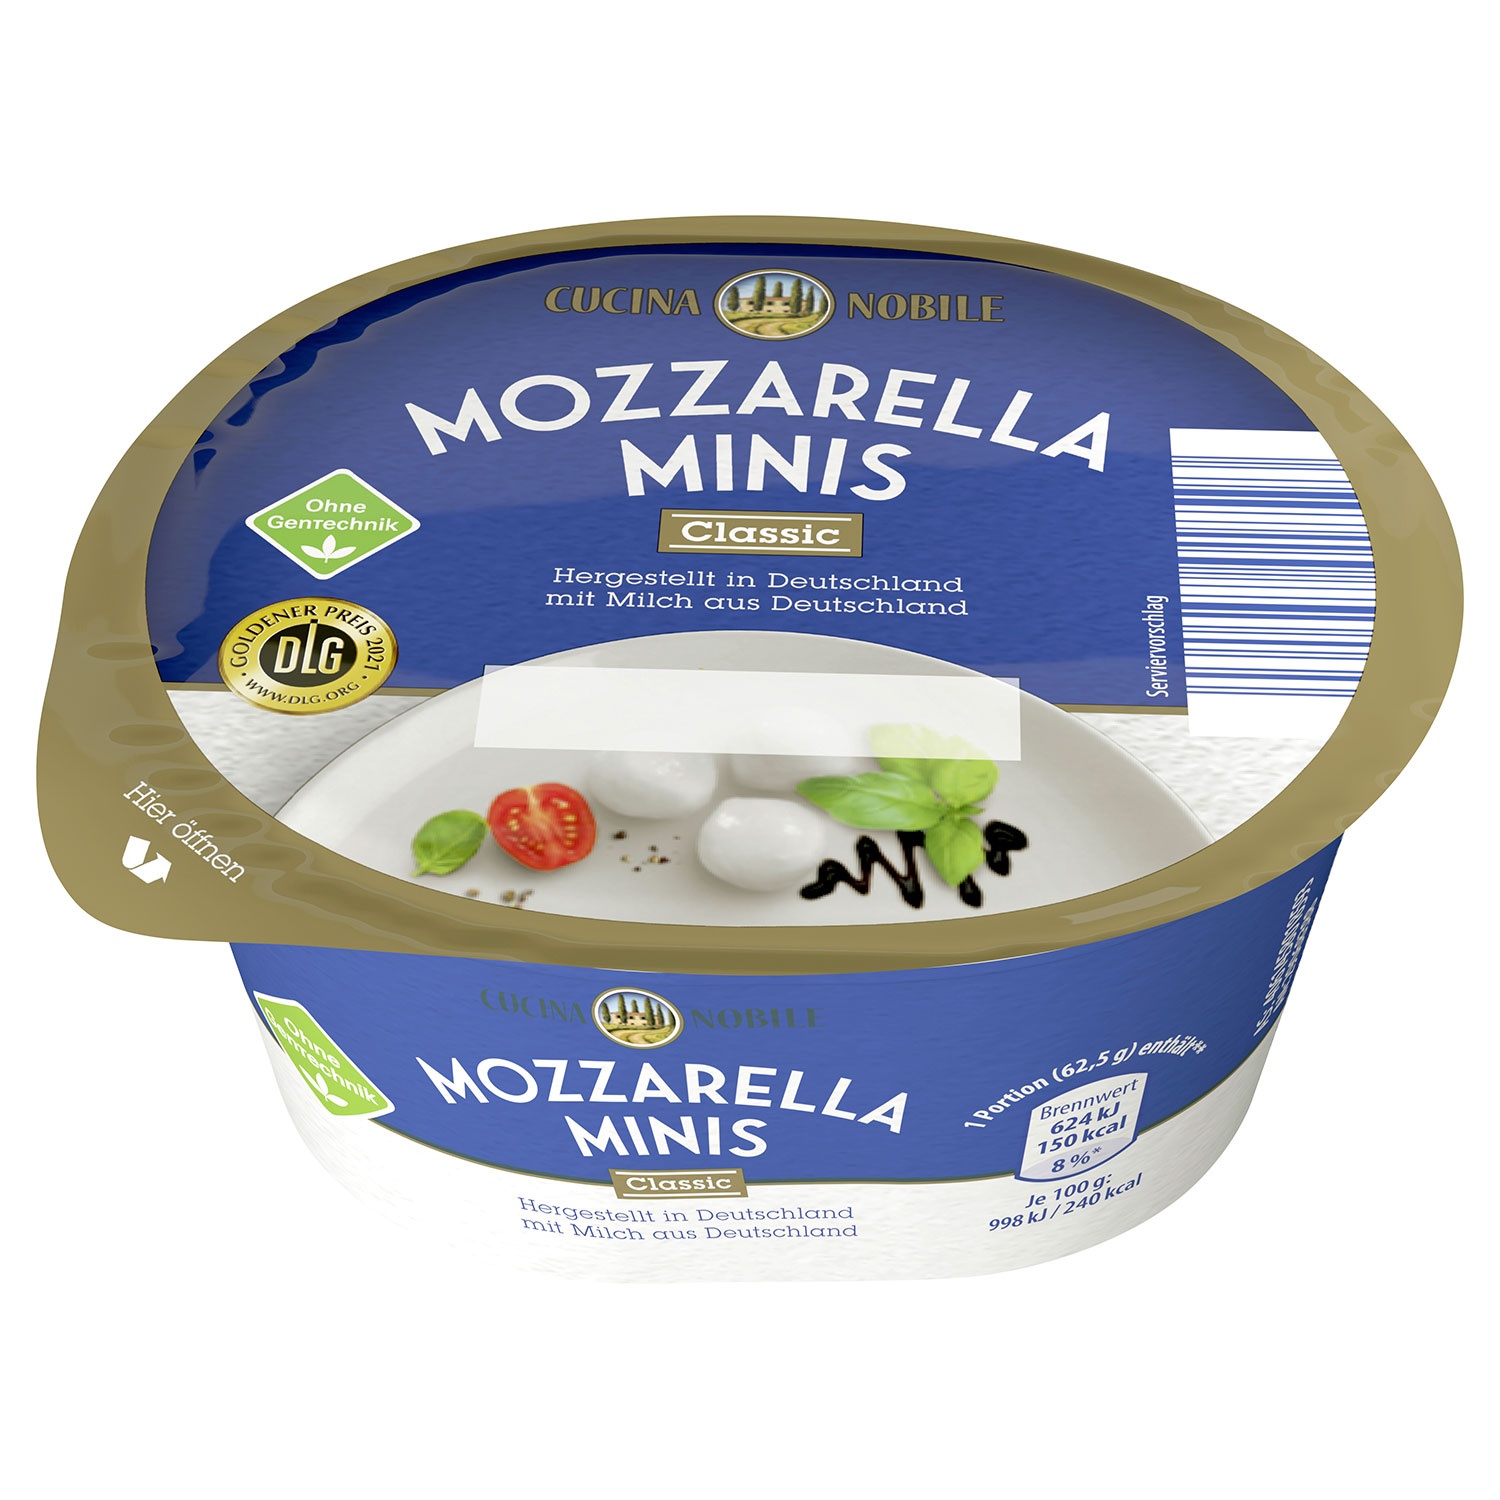 CUCINA NOBILE Mozzarella Minis 125 g